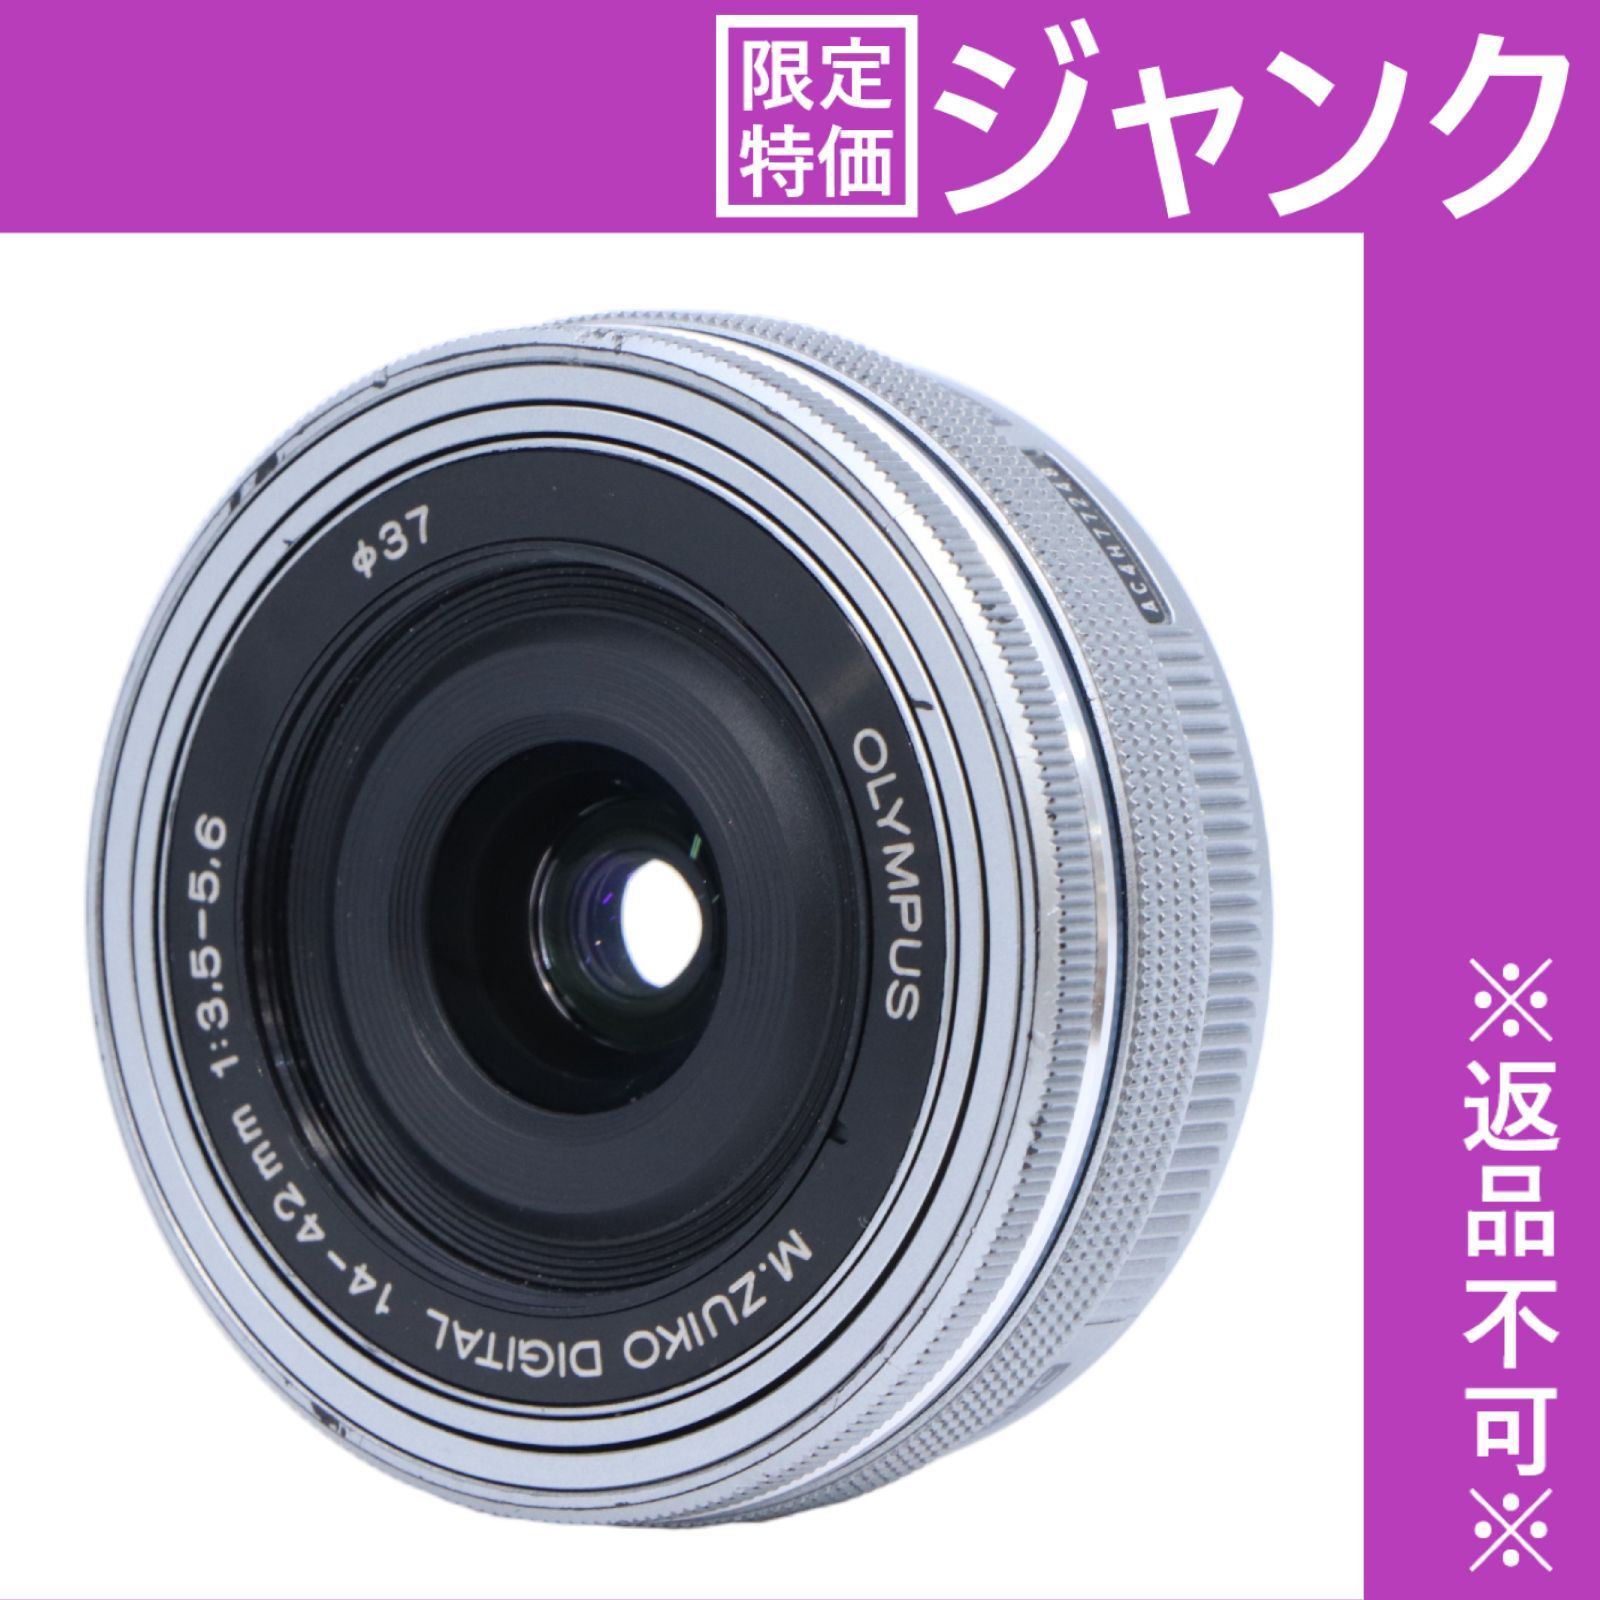 ジャンク品 オリンパス M.ZUIKO DIGITAL 14-42mm ED - カメラ